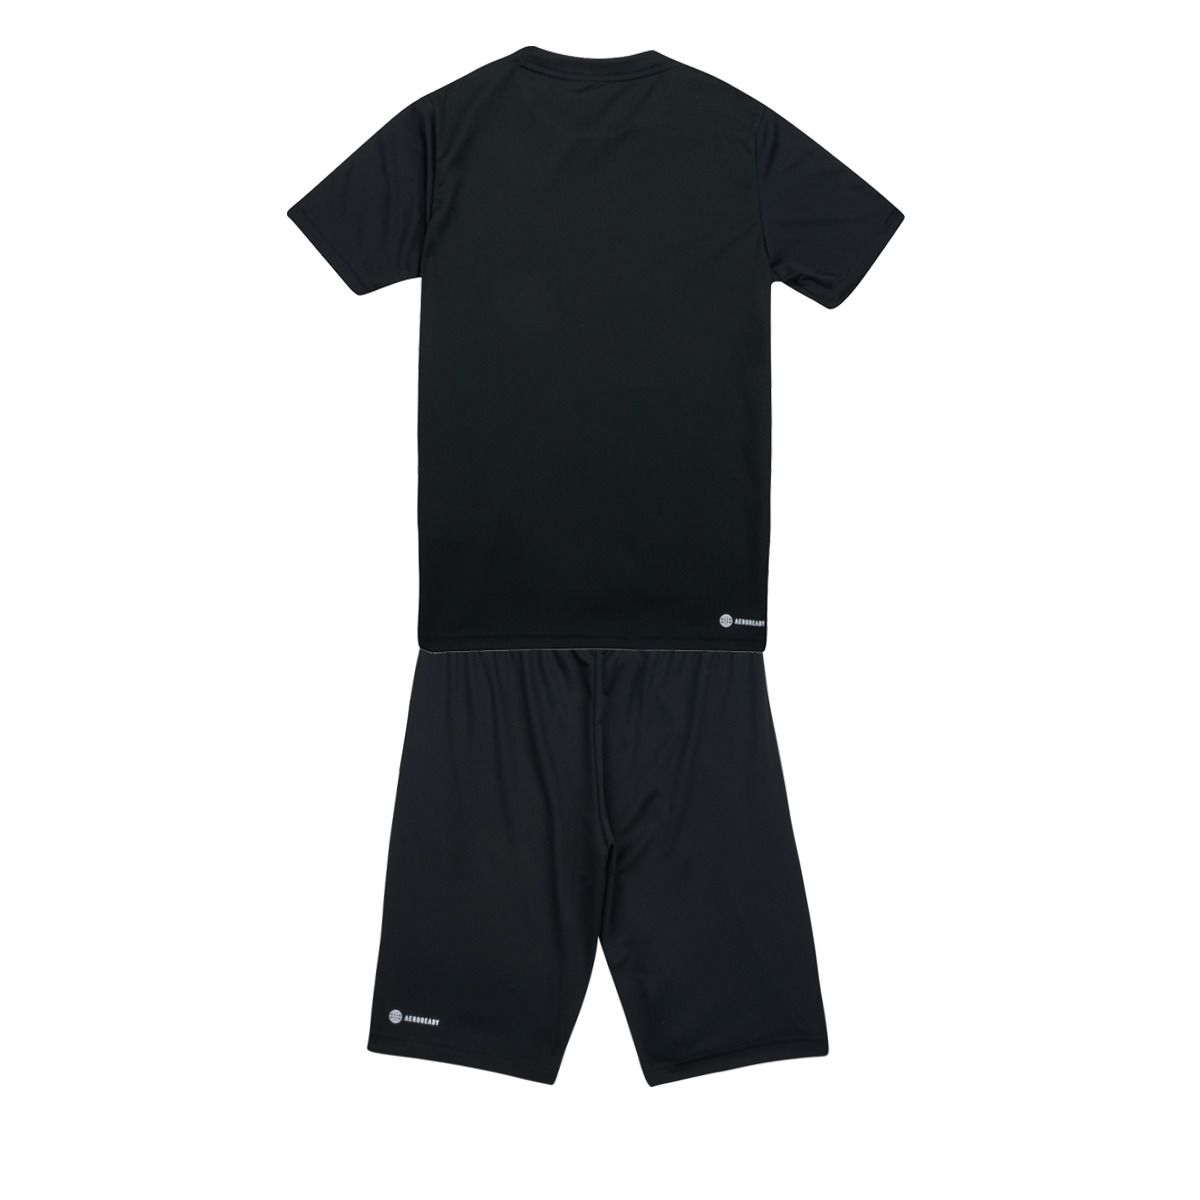 Adidas Sportswear Noir TR-ES 3S TSET VxJTIlZ5